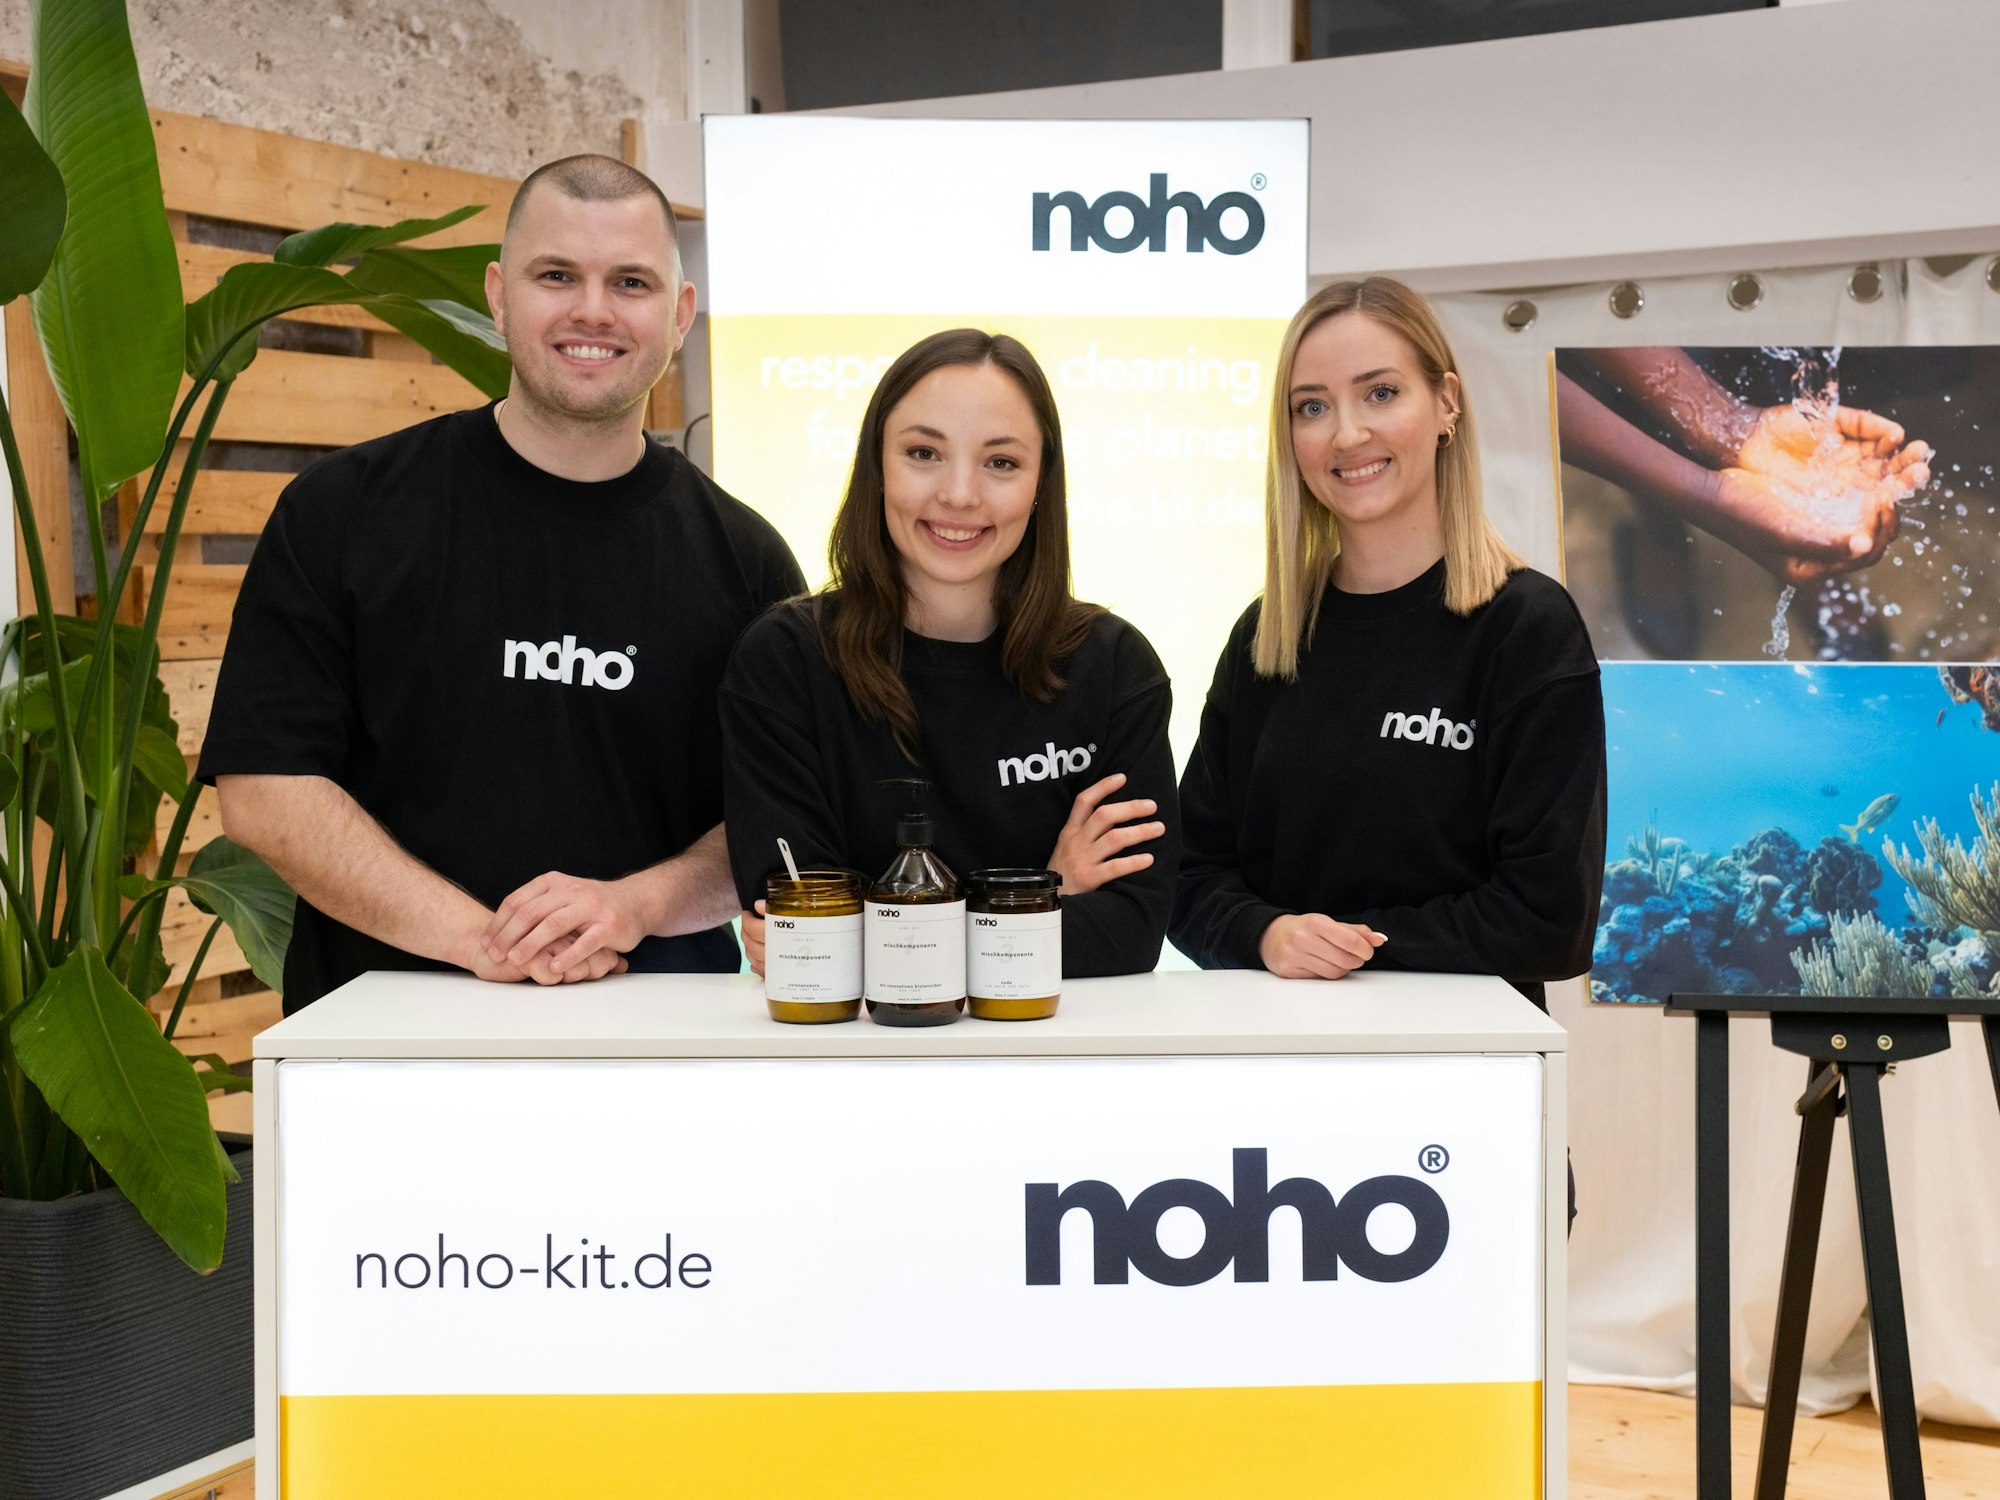 Die drei noho-GründerMartin Gaspers, Nathalie Prokop und Sarah Dankenbring lächeln in die Kamera.